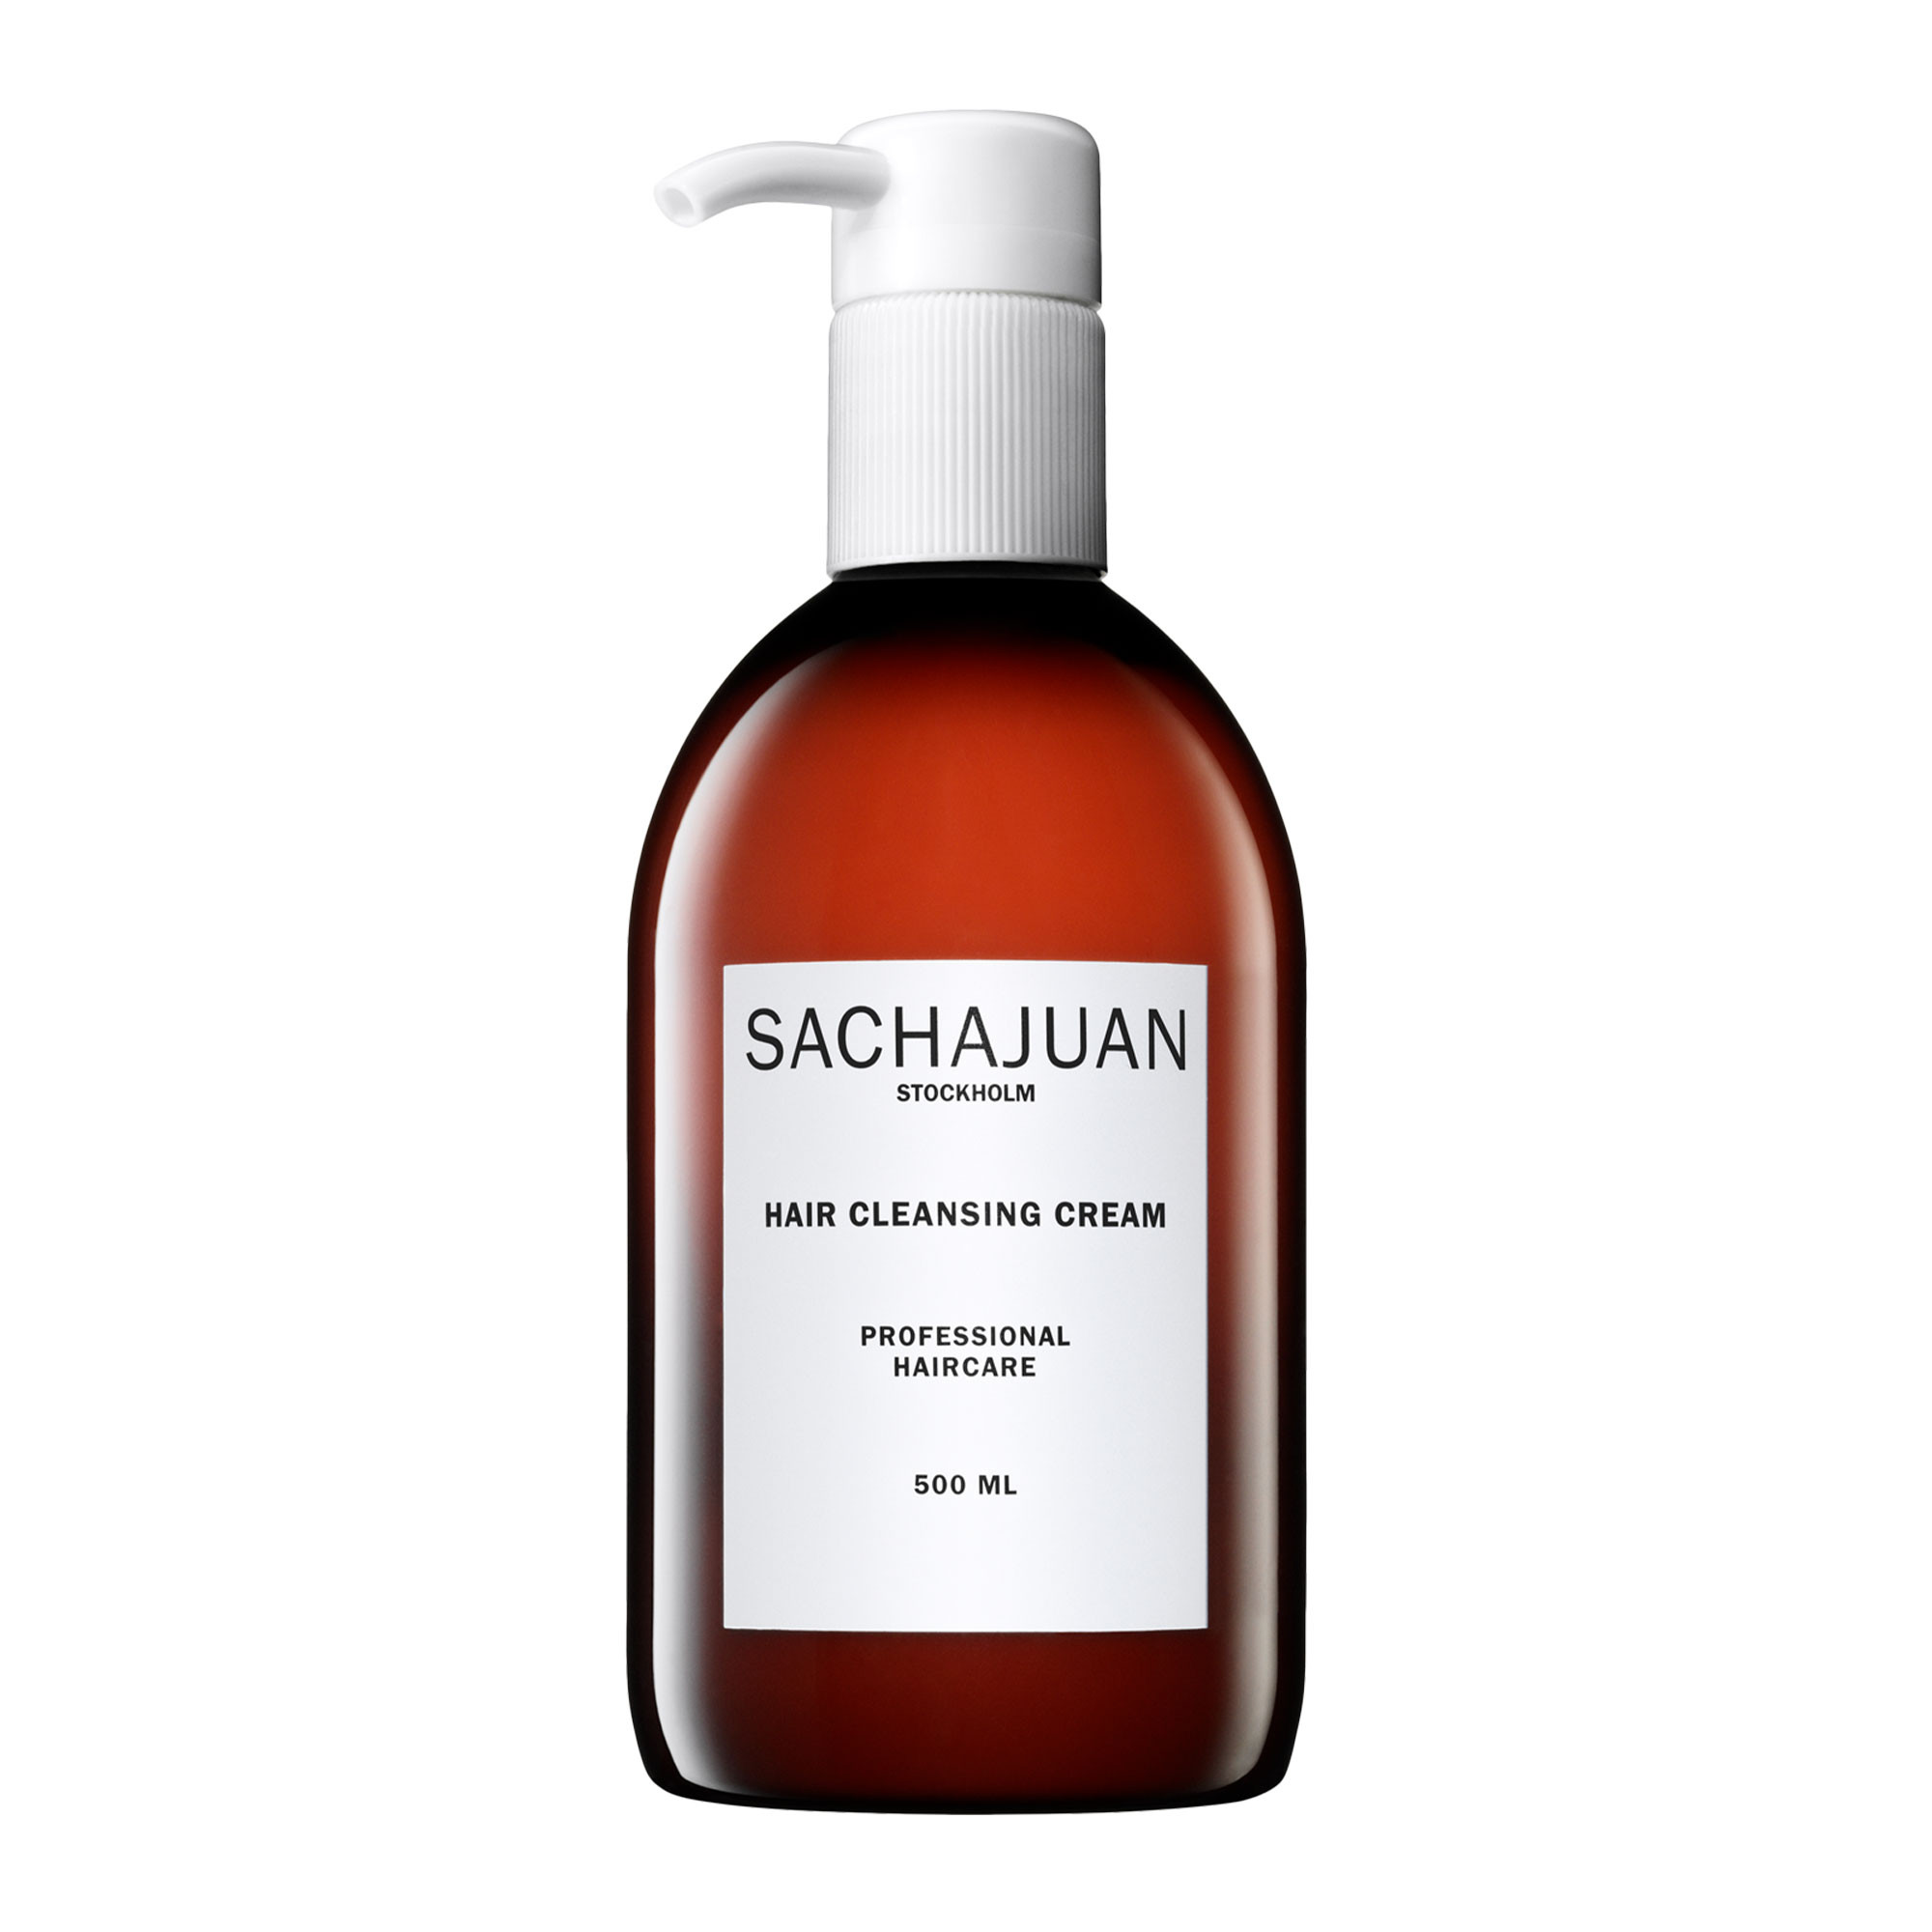 Sachajuan Hair Cleansing Cream Крем для бережного глубокого очищения кожи головы, блеска и увлажнения волос